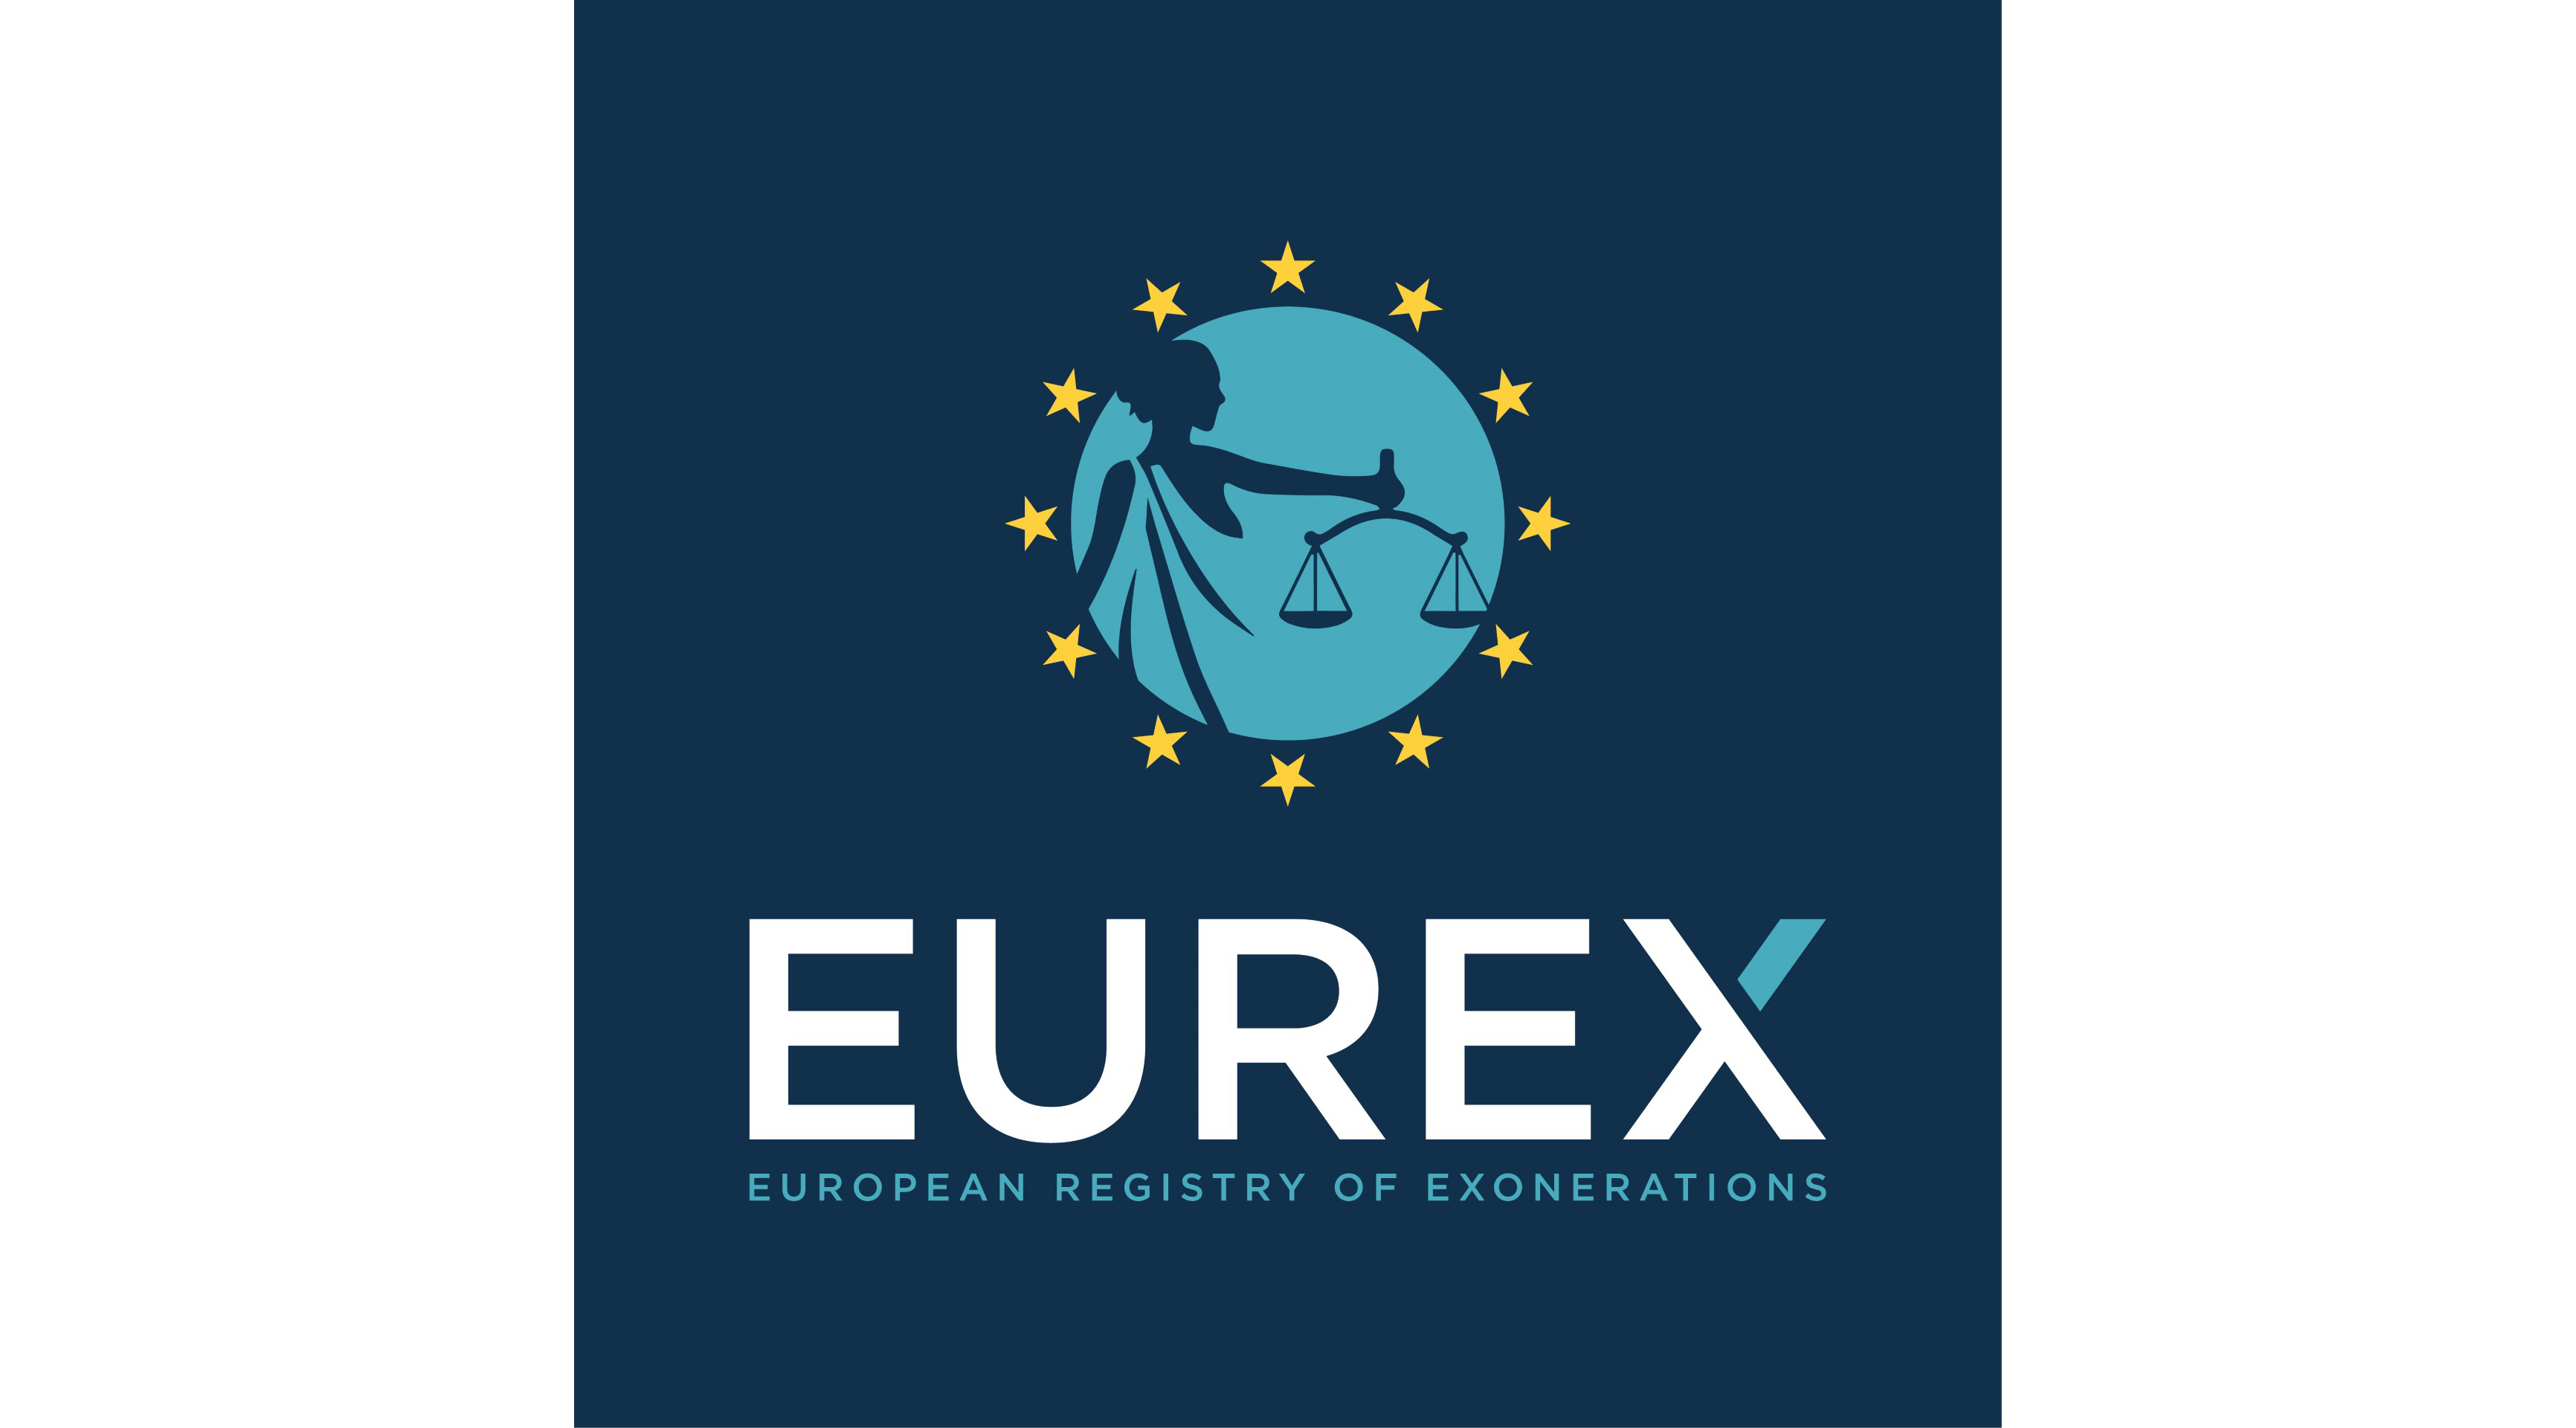 Logo of European Registry of Exonerations